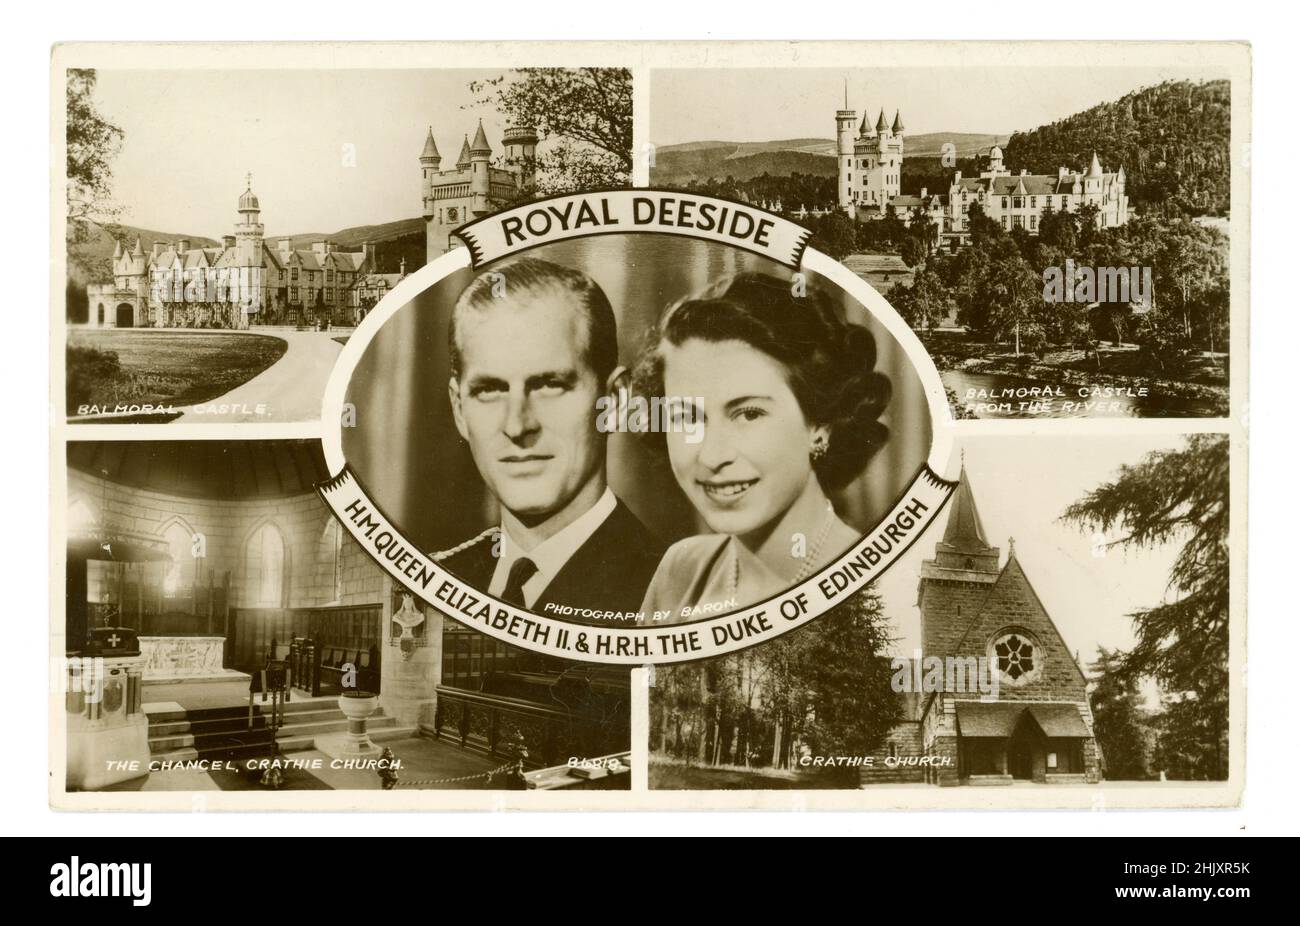 Carte postale originale de montage photo des années 1950 de la reine Elizabeth 11 et HRH Duc d'Édimbourg, Royal Deeside, plus résidence royale Château Balmoral, Église de Crithie (lieu de culte de la famille royale britannique lorsqu'ils sont en résidence au château Balmoral voisin.)Écosse, Royaume-Uni Circa 1953 Banque D'Images